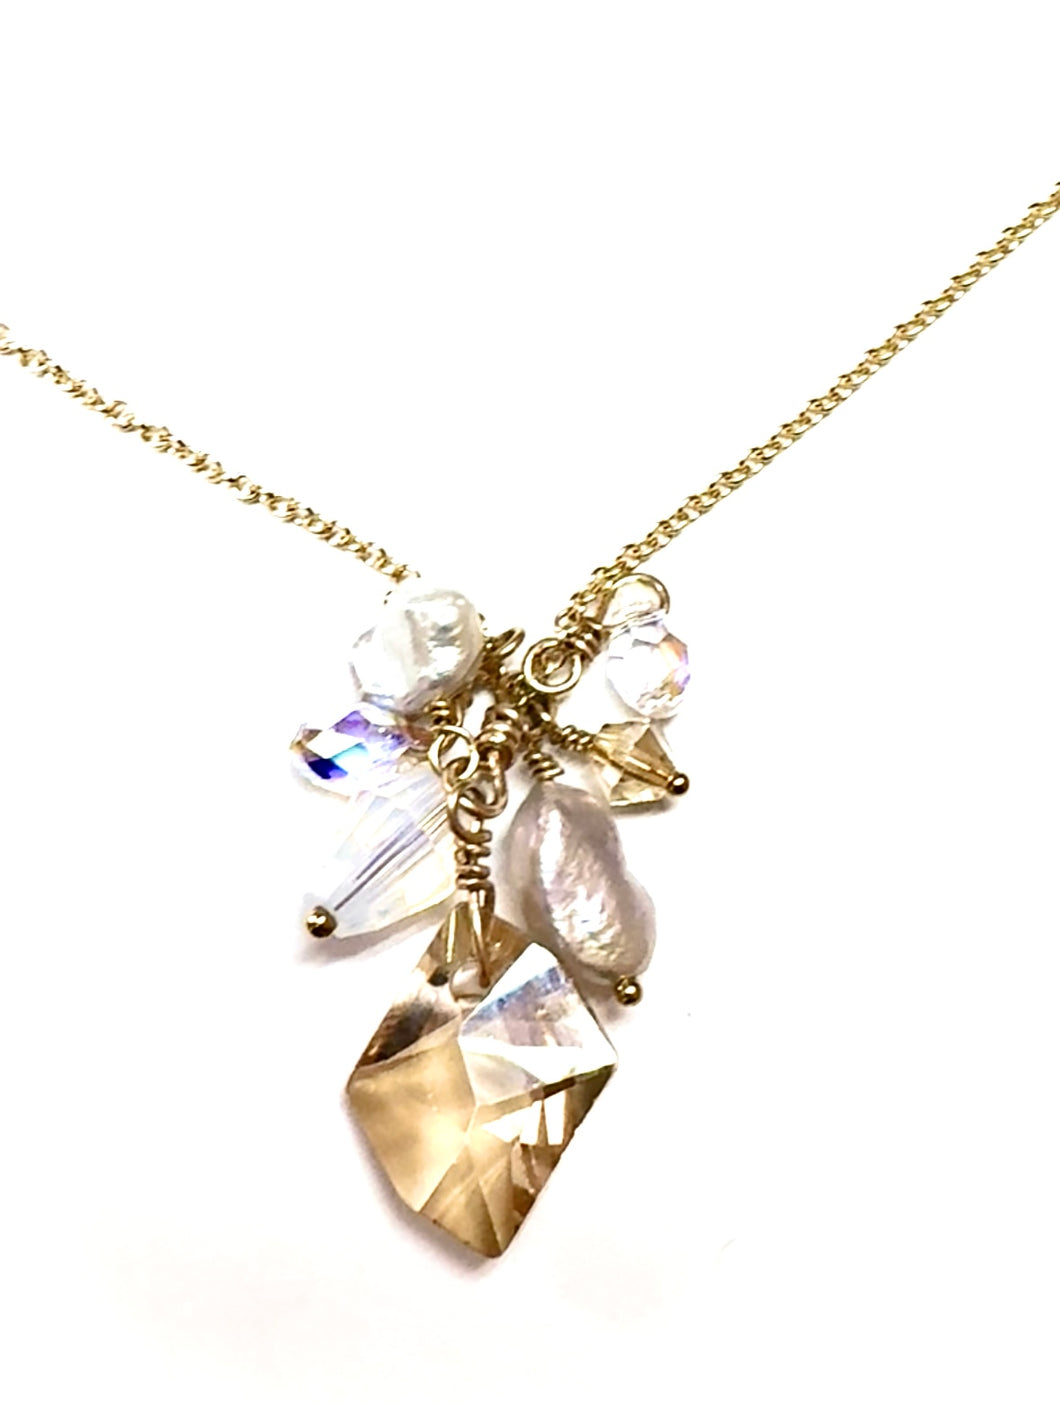 Samantha Opalite golden shadow necklace